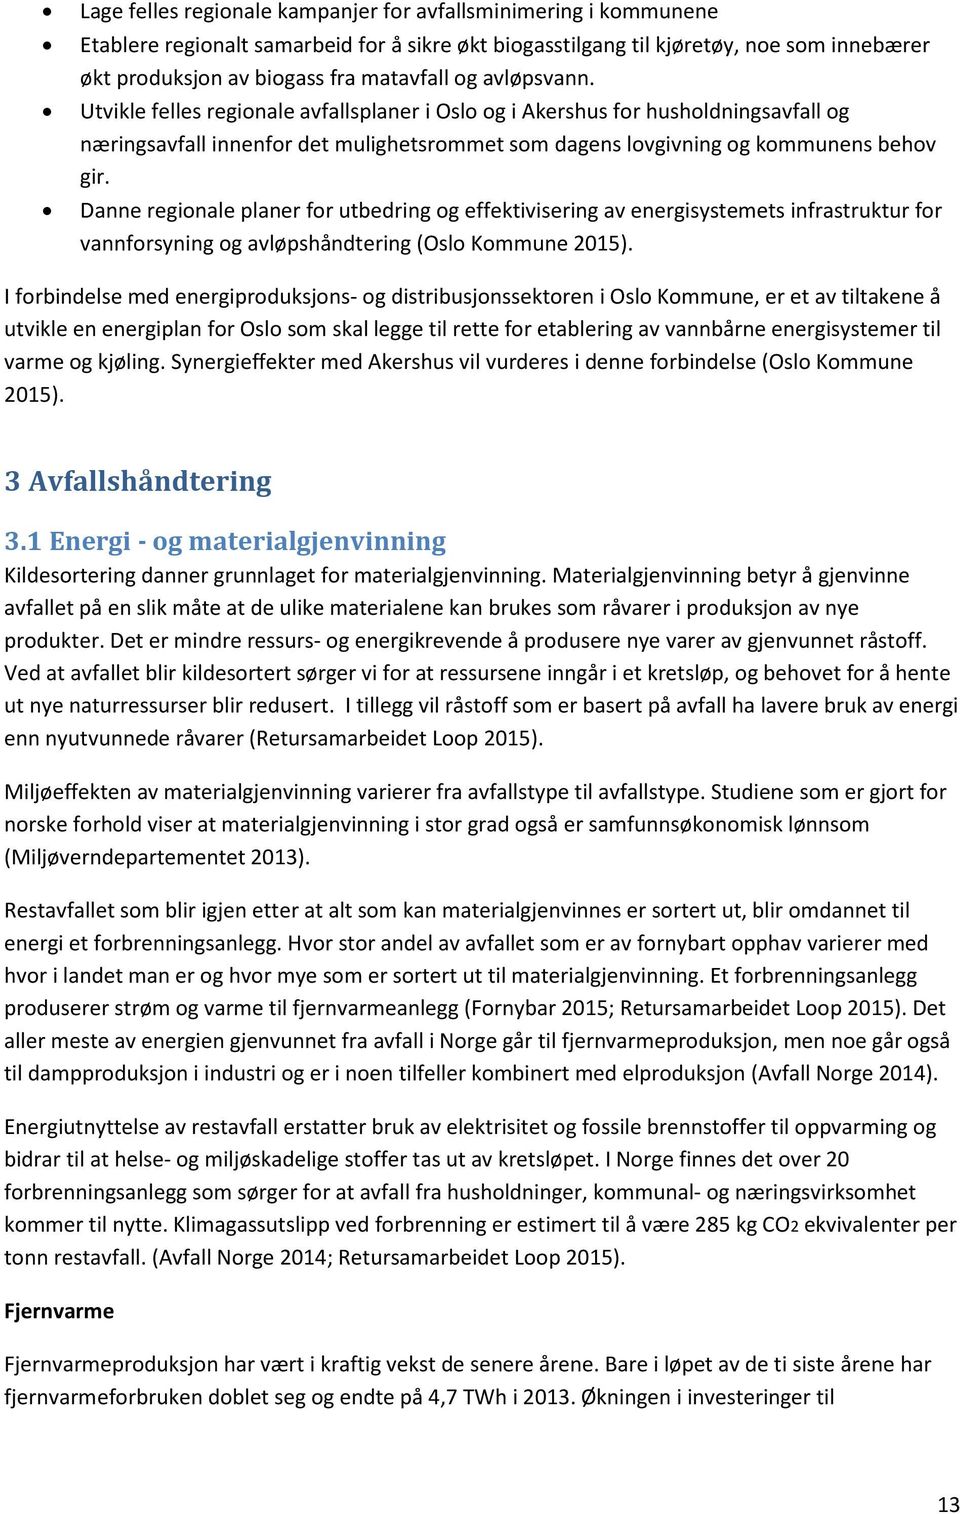 Danne regionale planer for utbedring og effektivisering av energisystemets infrastruktur for vannforsyning og avløpshåndtering (Oslo Kommune 2015).